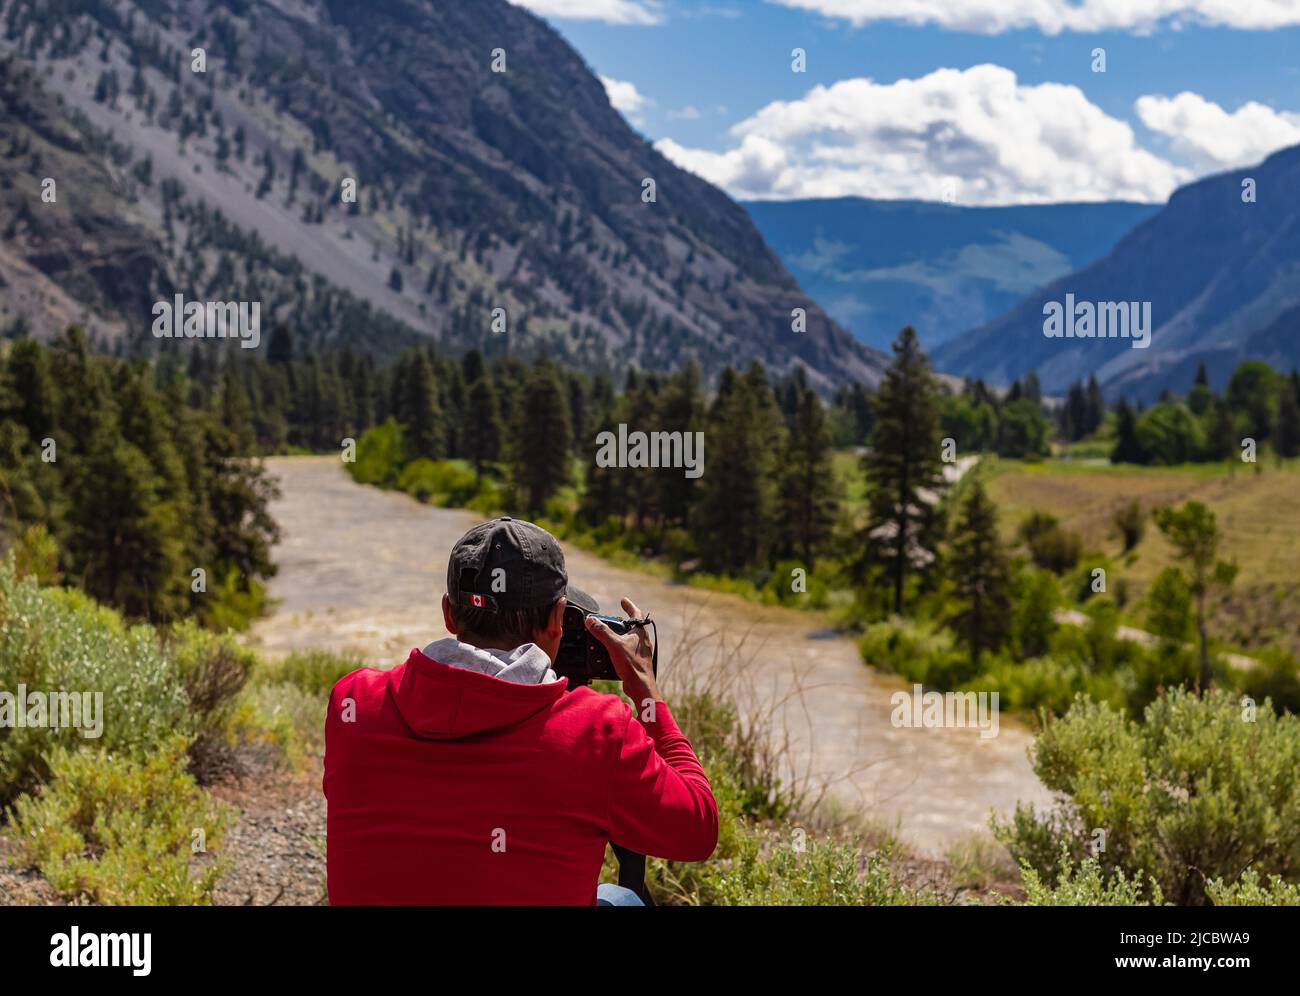 Homme photographe prenant des photos avec un appareil photo numérique dans une montagne. Concept de voyage et de mode de vie actif. Photographie professionnelle créative. Tél Banque D'Images